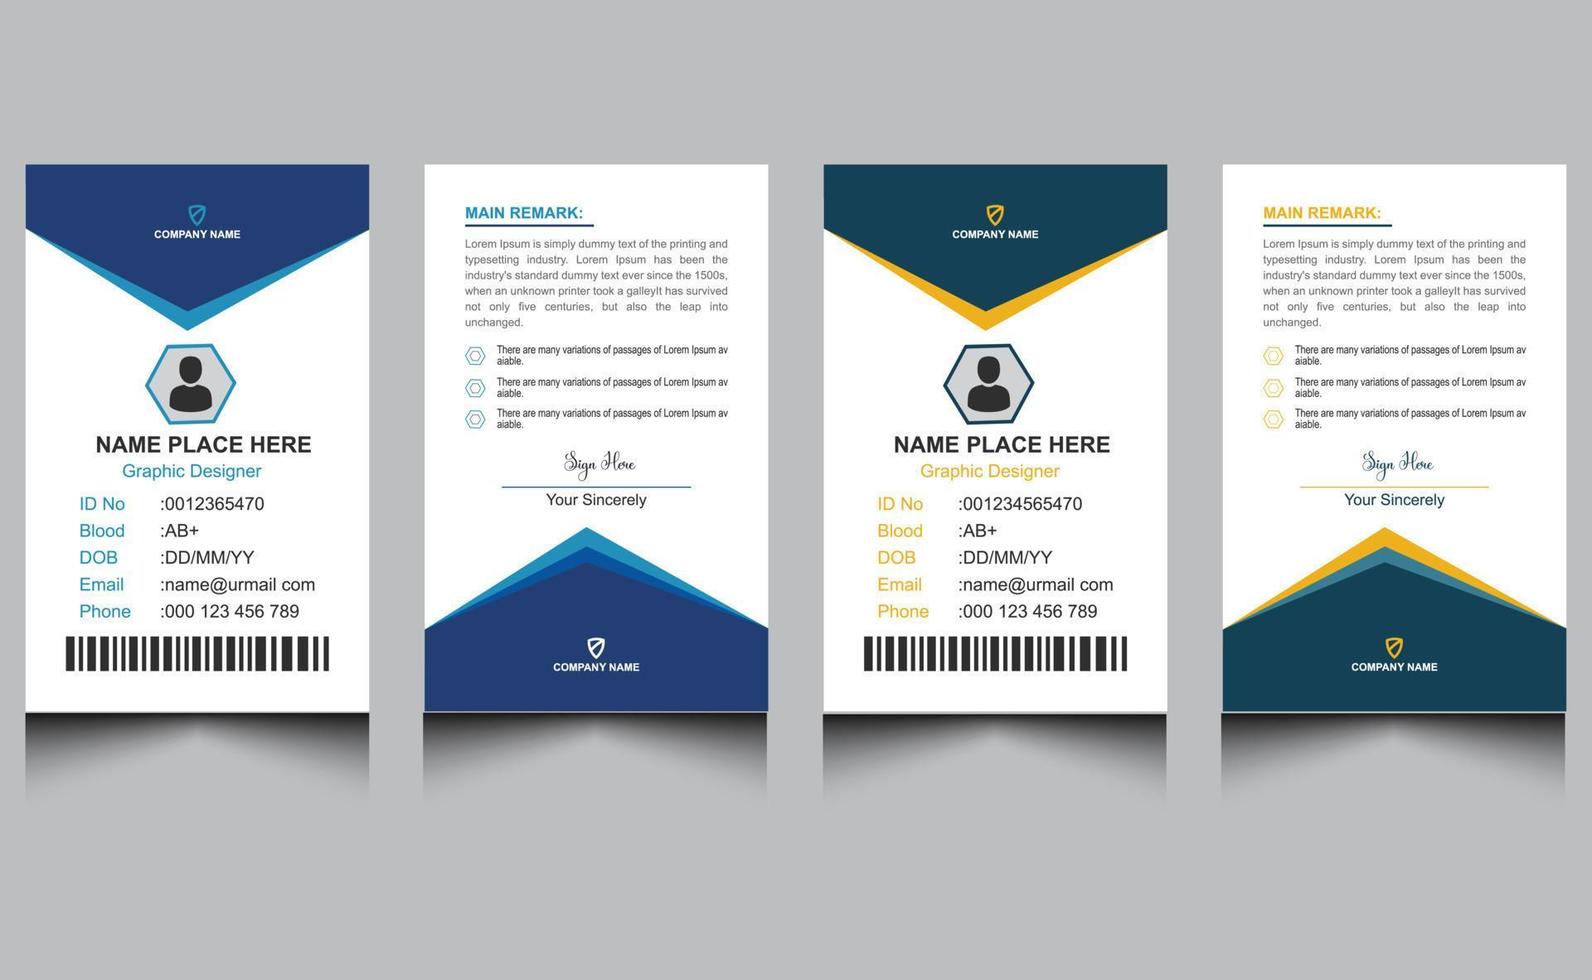 plantilla de diseño de tarjeta de identificación de oficina de empresa profesional moderna corporativa creativa limpia elegante vector